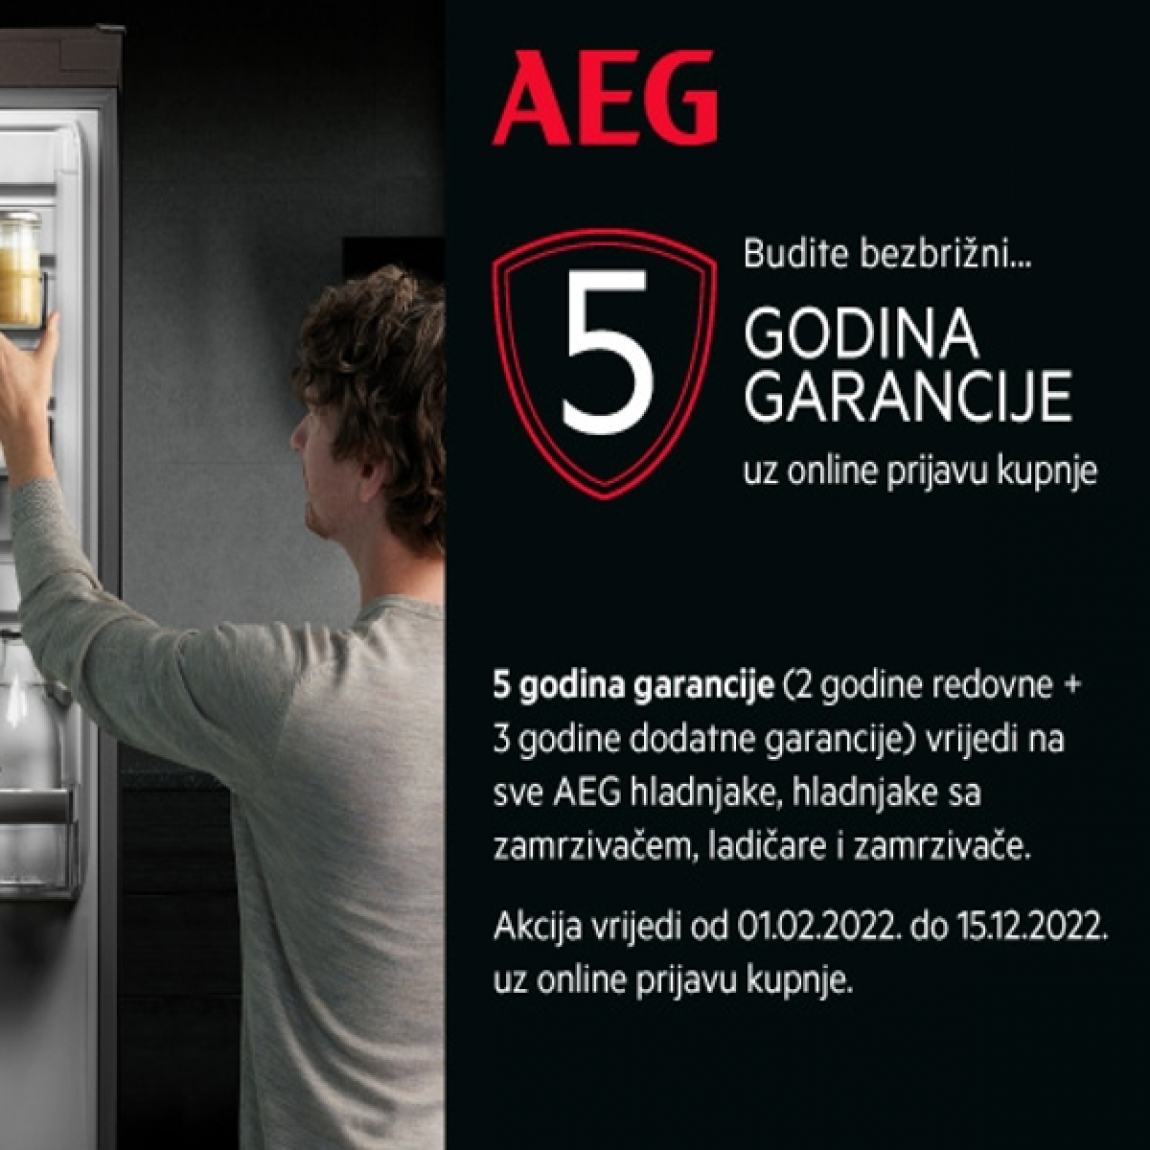 5 godina garancije na sve AEG hladnjake i zamrzivače